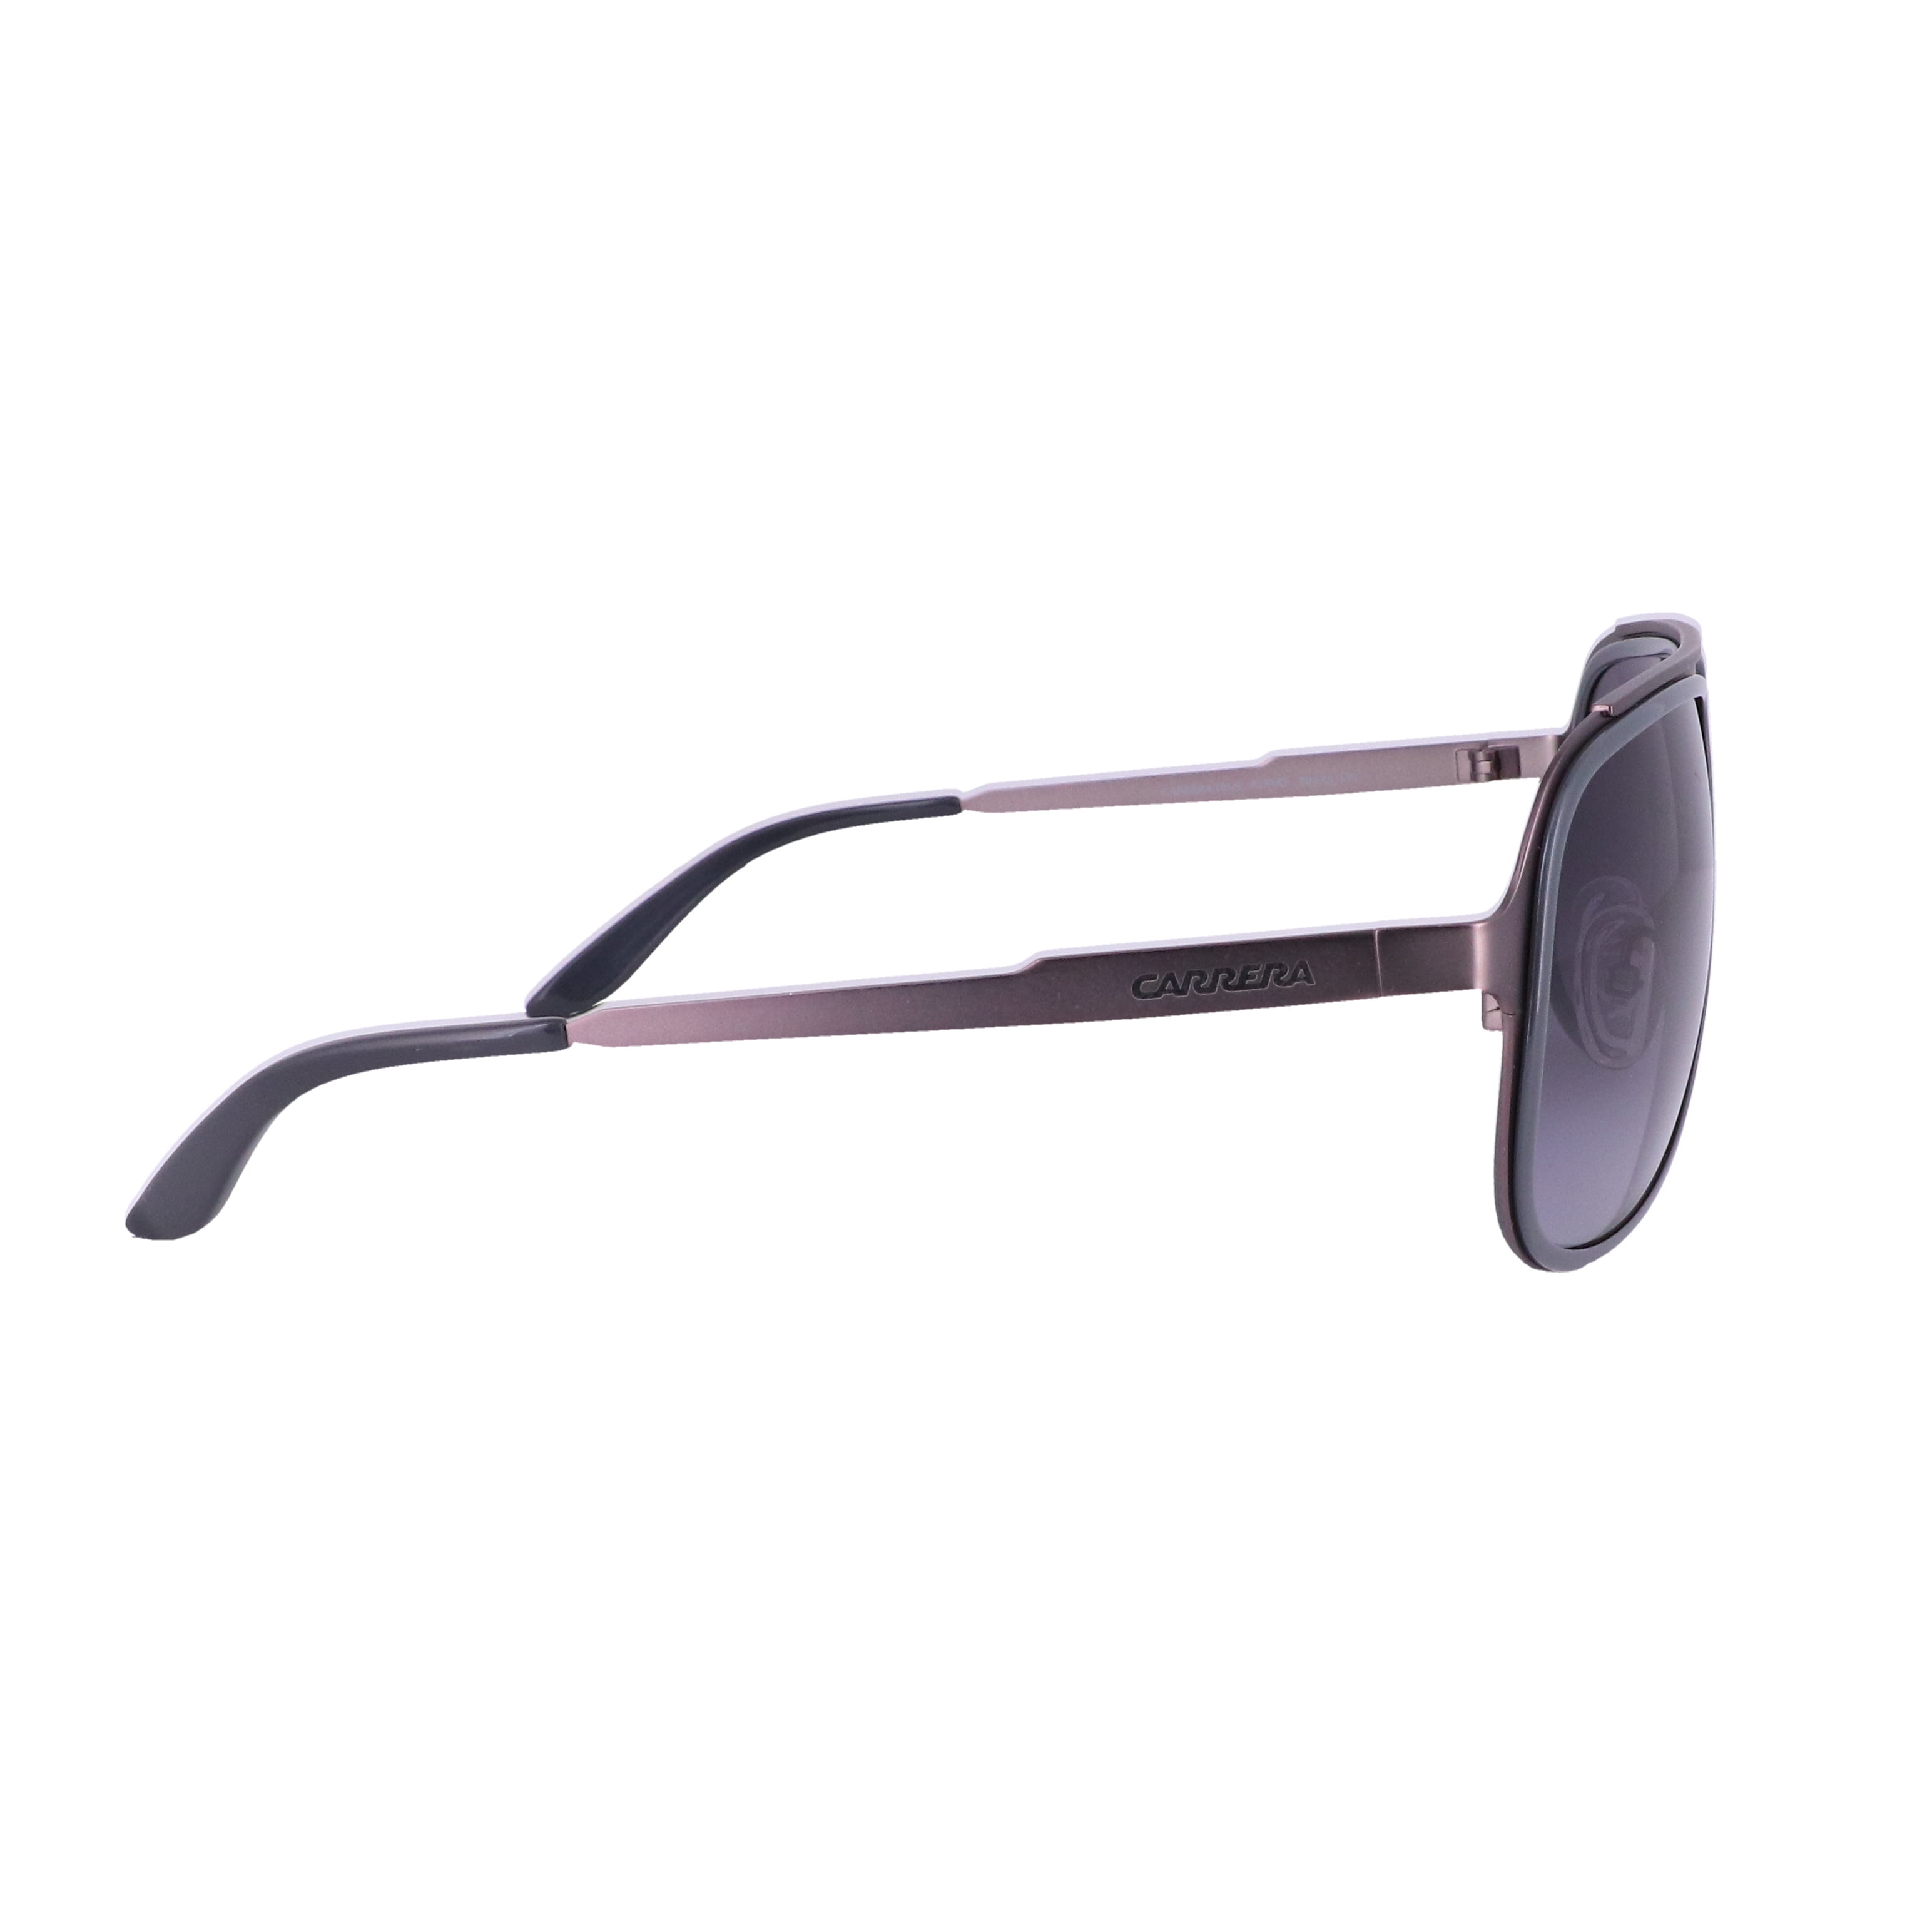 CARRERA Sunglasses 101/S 0KLP Ruthenium Gray 59MM